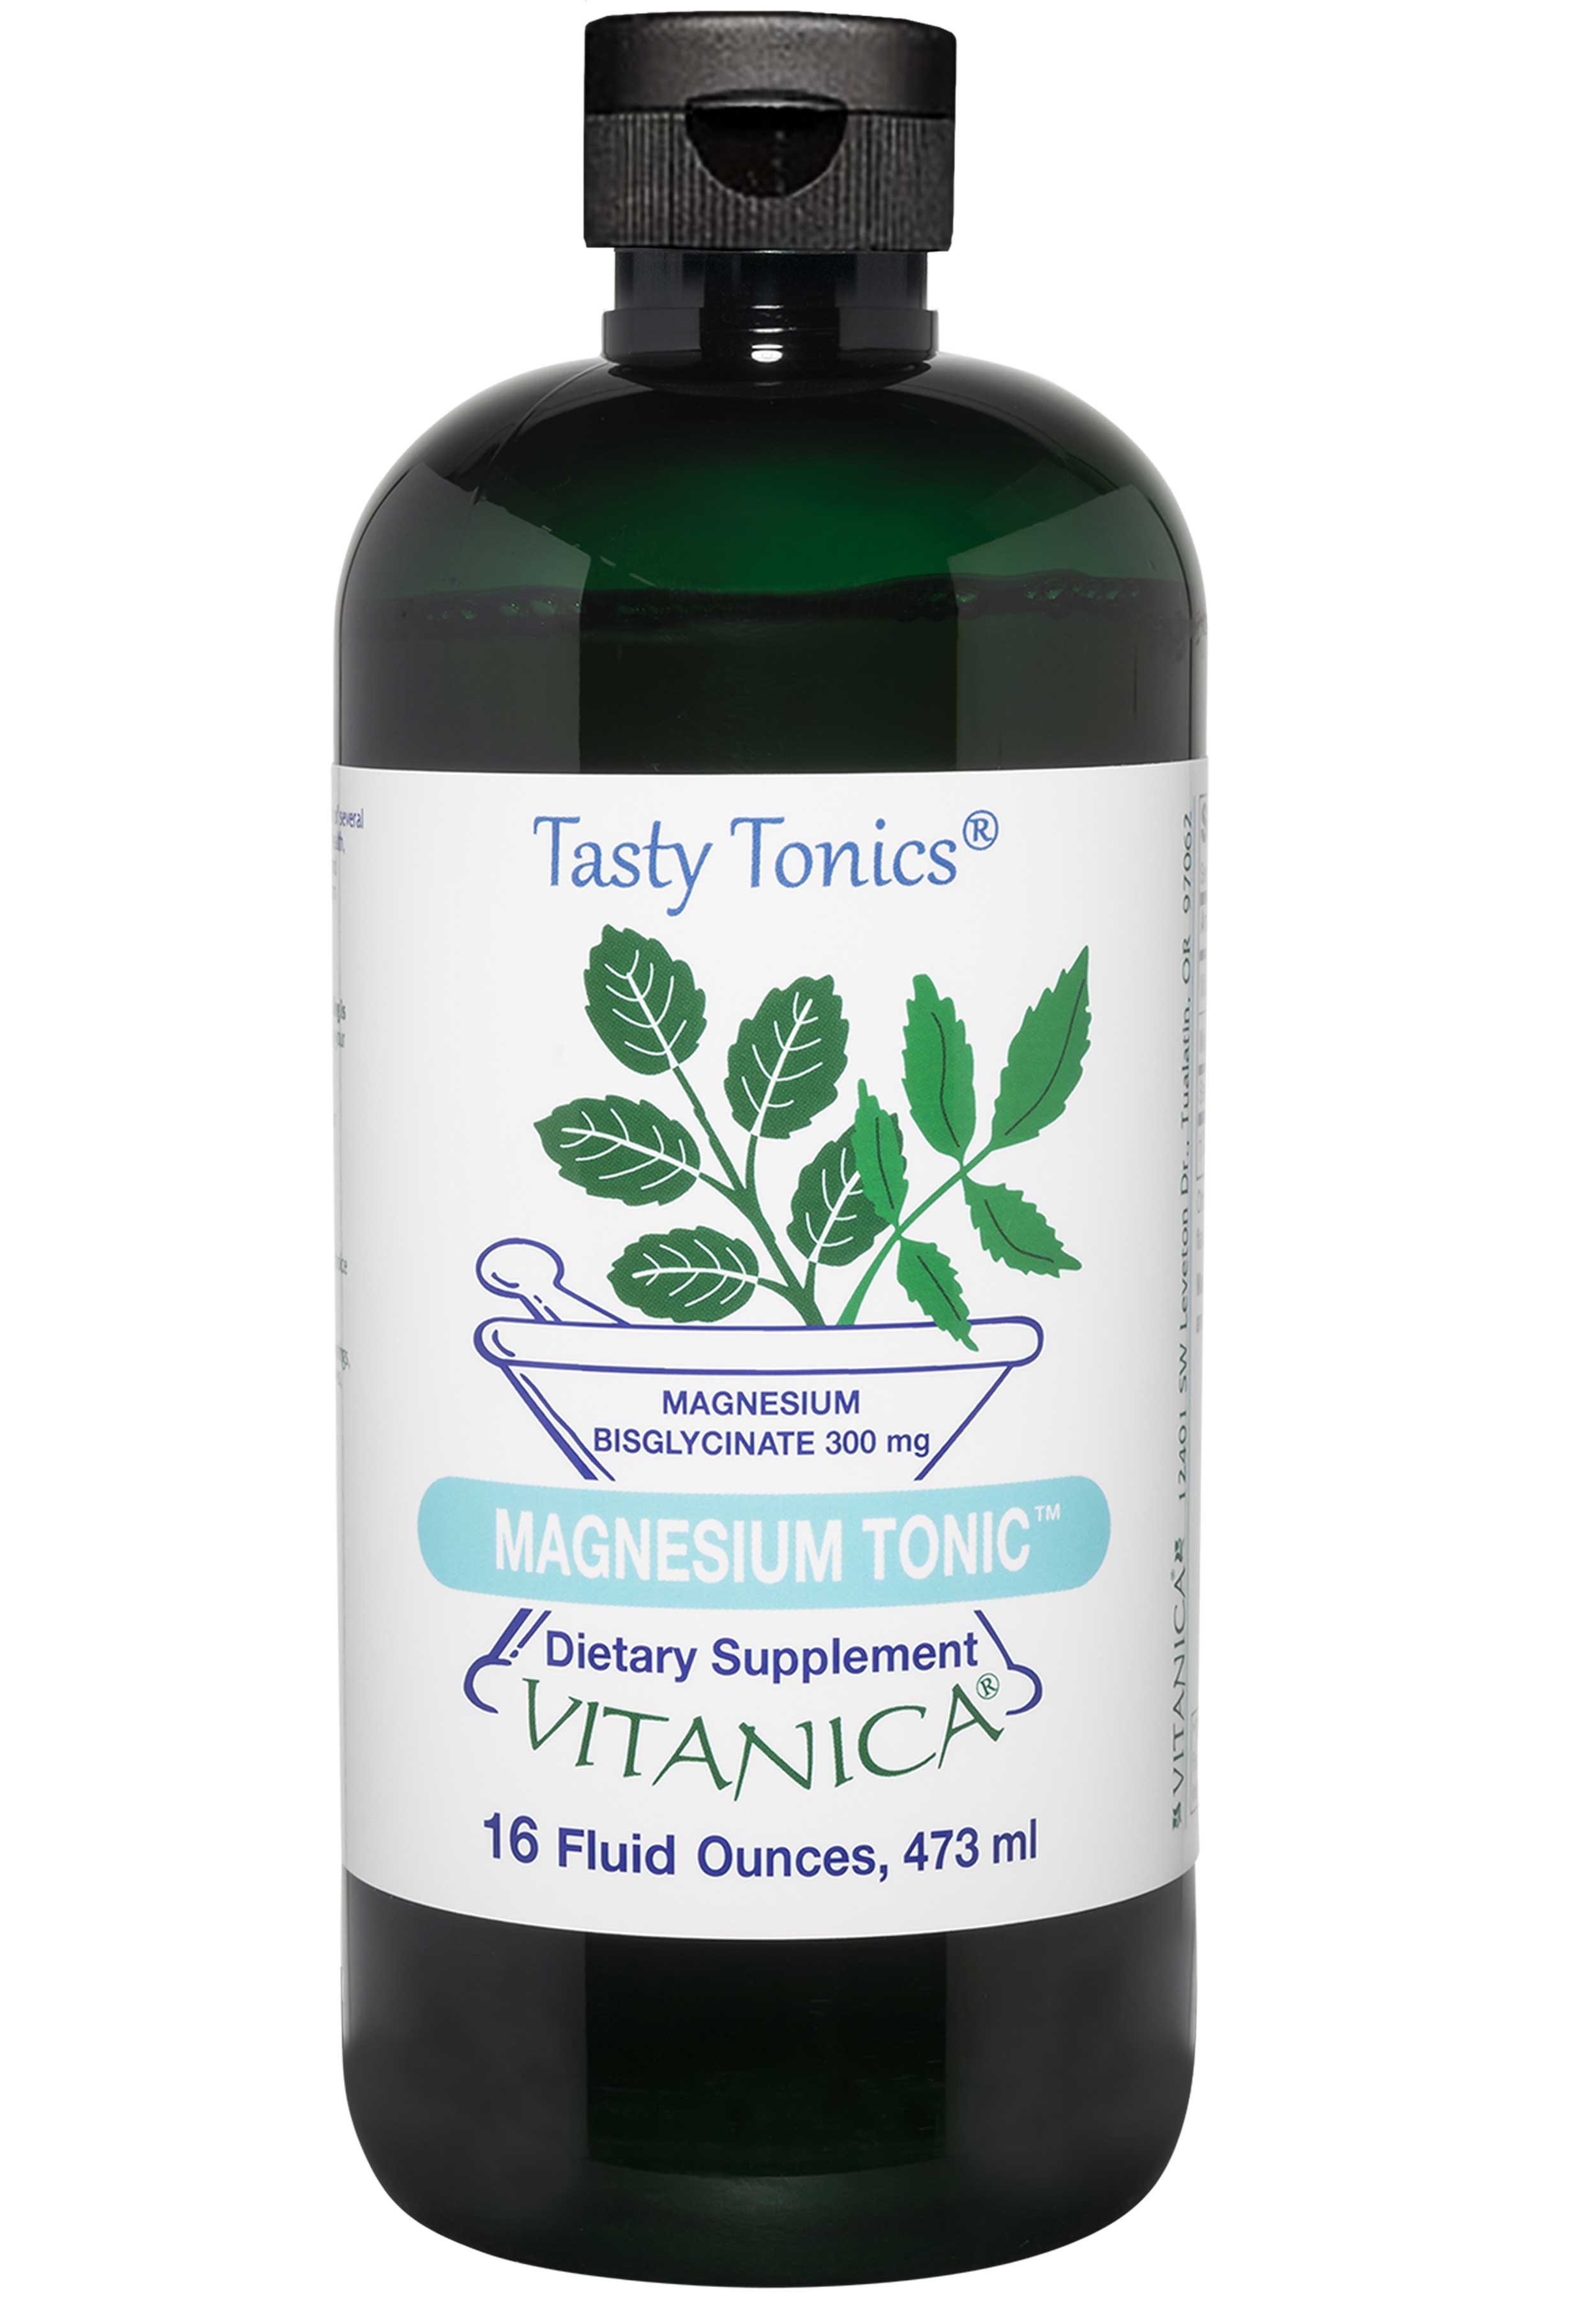 Vitanica Magnesium Tonic